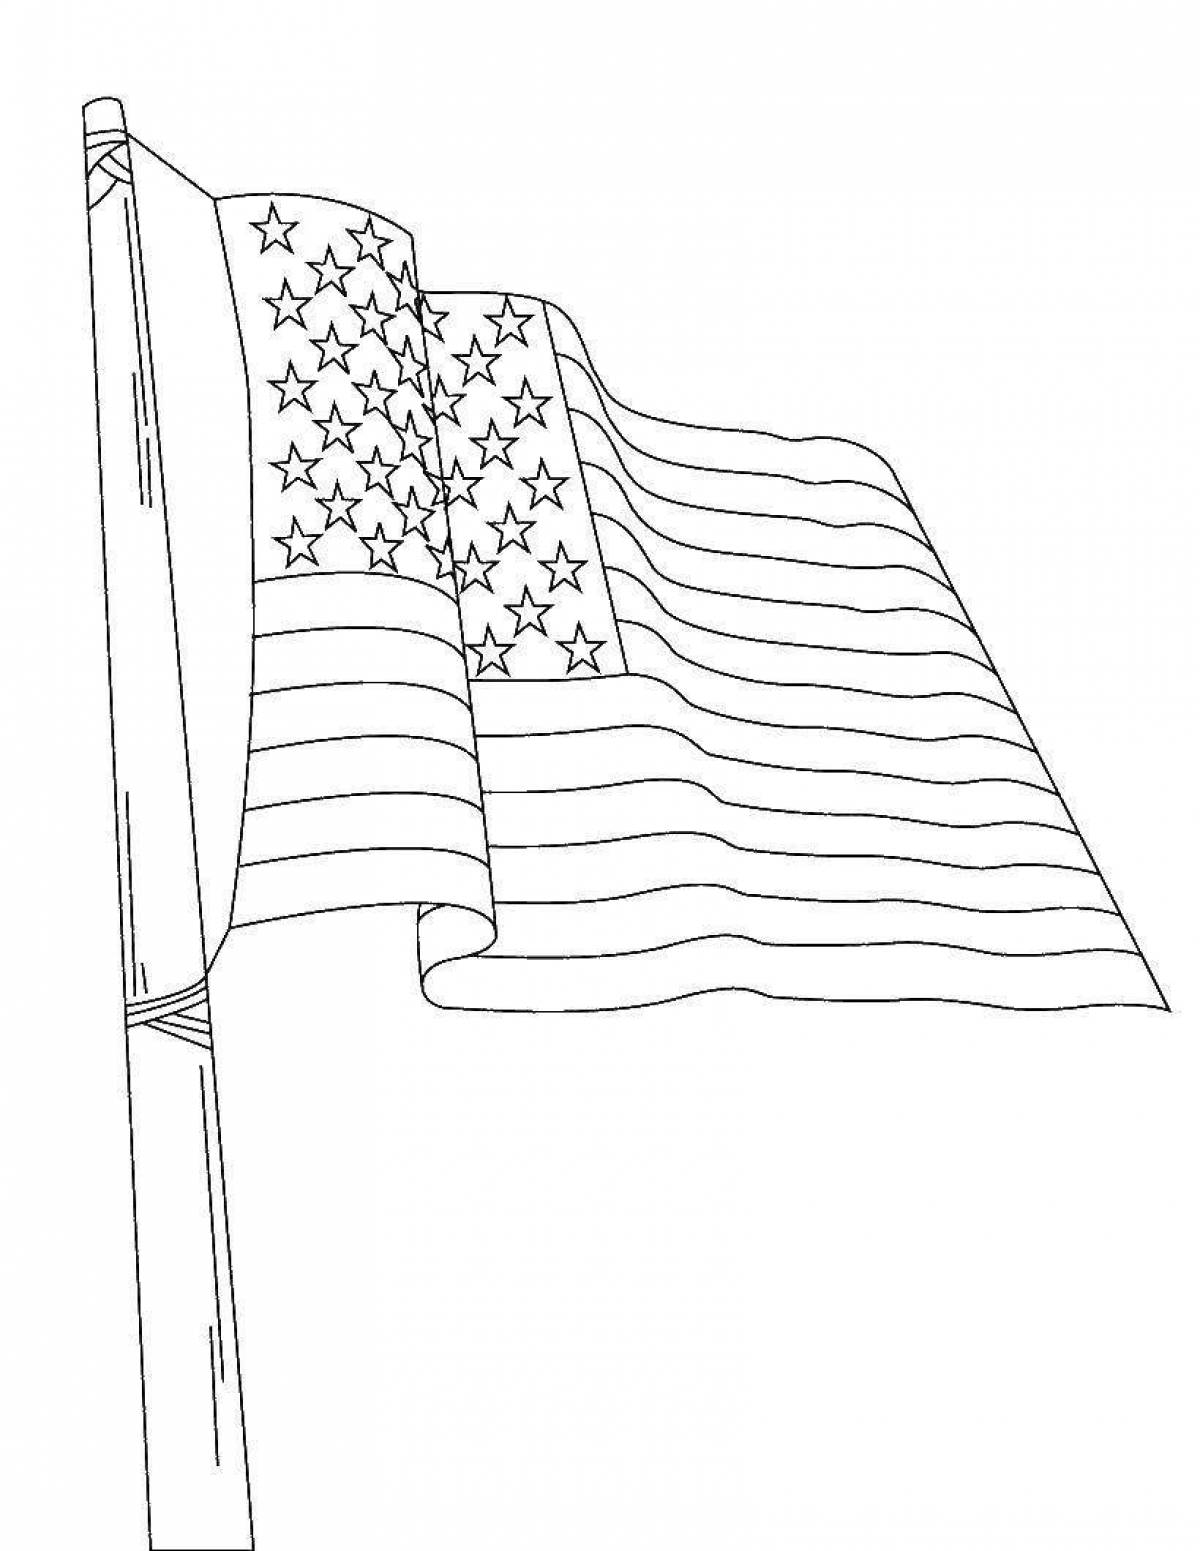 Богато детализированная страница раскраски американского флага